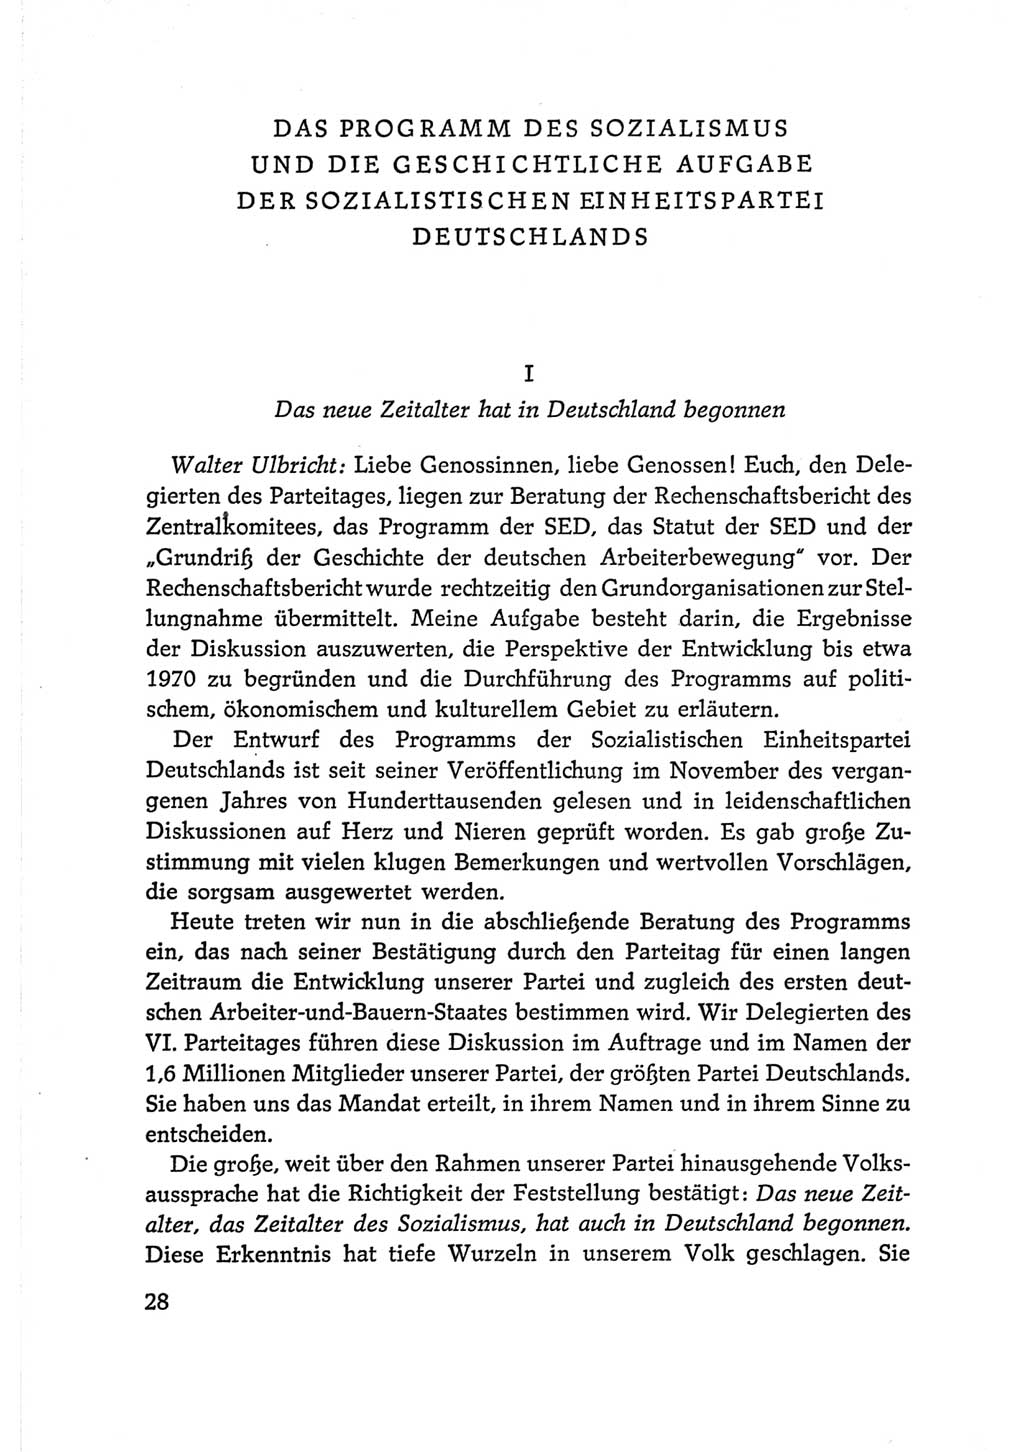 Protokoll der Verhandlungen des Ⅵ. Parteitages der Sozialistischen Einheitspartei Deutschlands (SED) [Deutsche Demokratische Republik (DDR)] 1963, Band Ⅰ, Seite 28 (Prot. Verh. Ⅵ. PT SED DDR 1963, Bd. Ⅰ, S. 28)